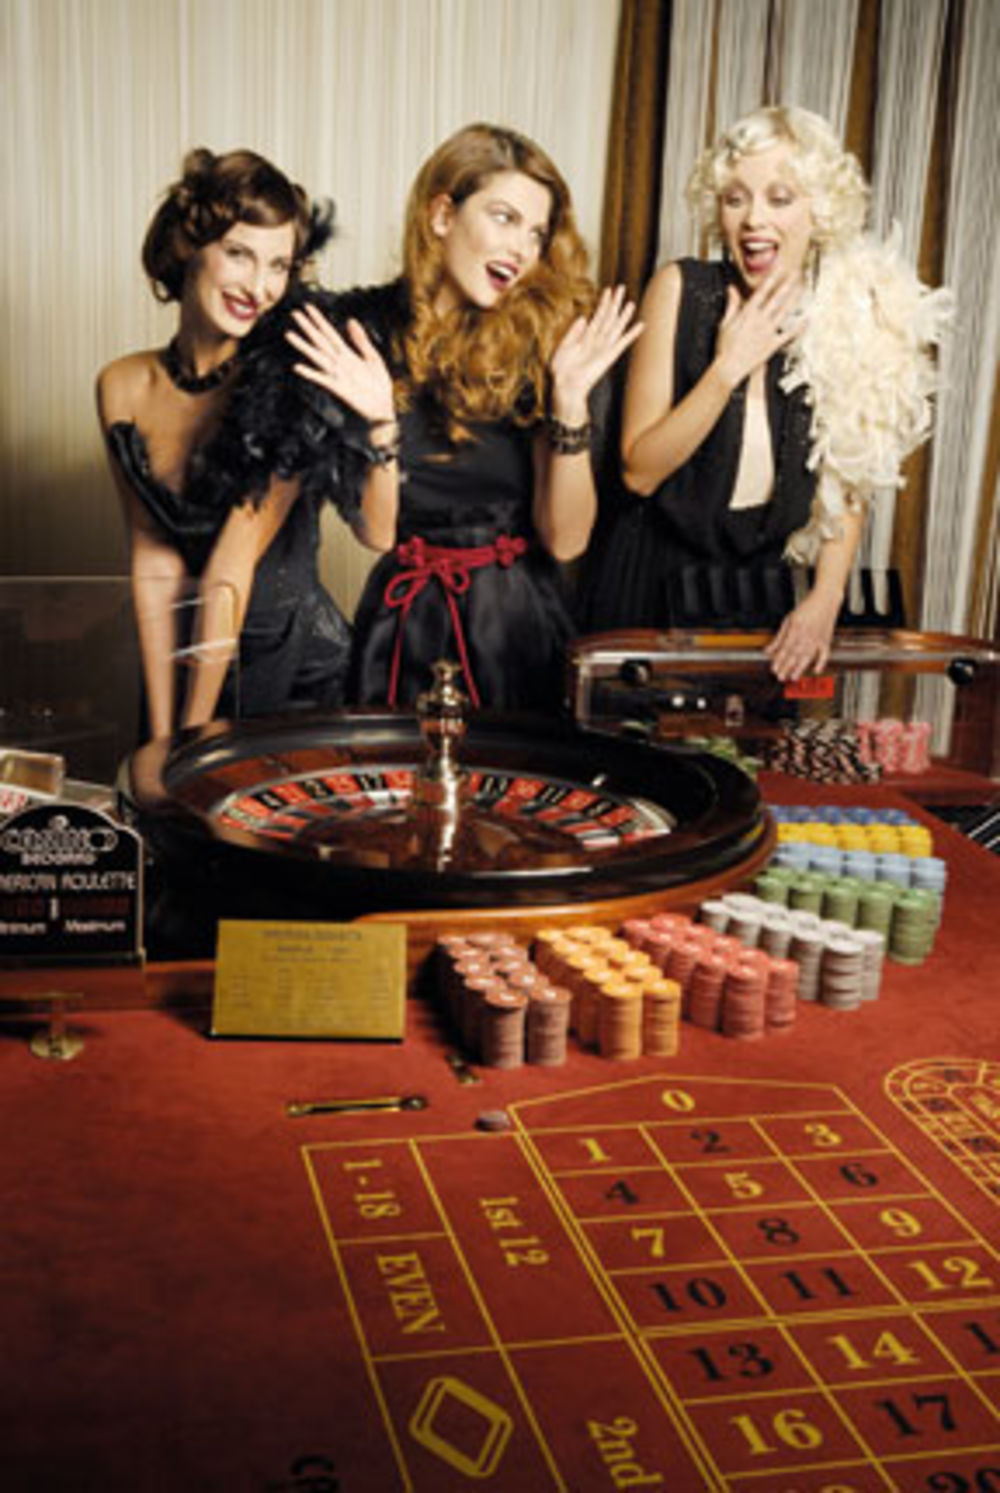 Da lepota i sreća mogu da idu ruku-podruku, dokazale su manekenke Zorana Obradović, Anđelija Vujović i Marija Kurjački, kada su u raskošnim toaletama uoči novogodišnje noći ušetale u kazino...